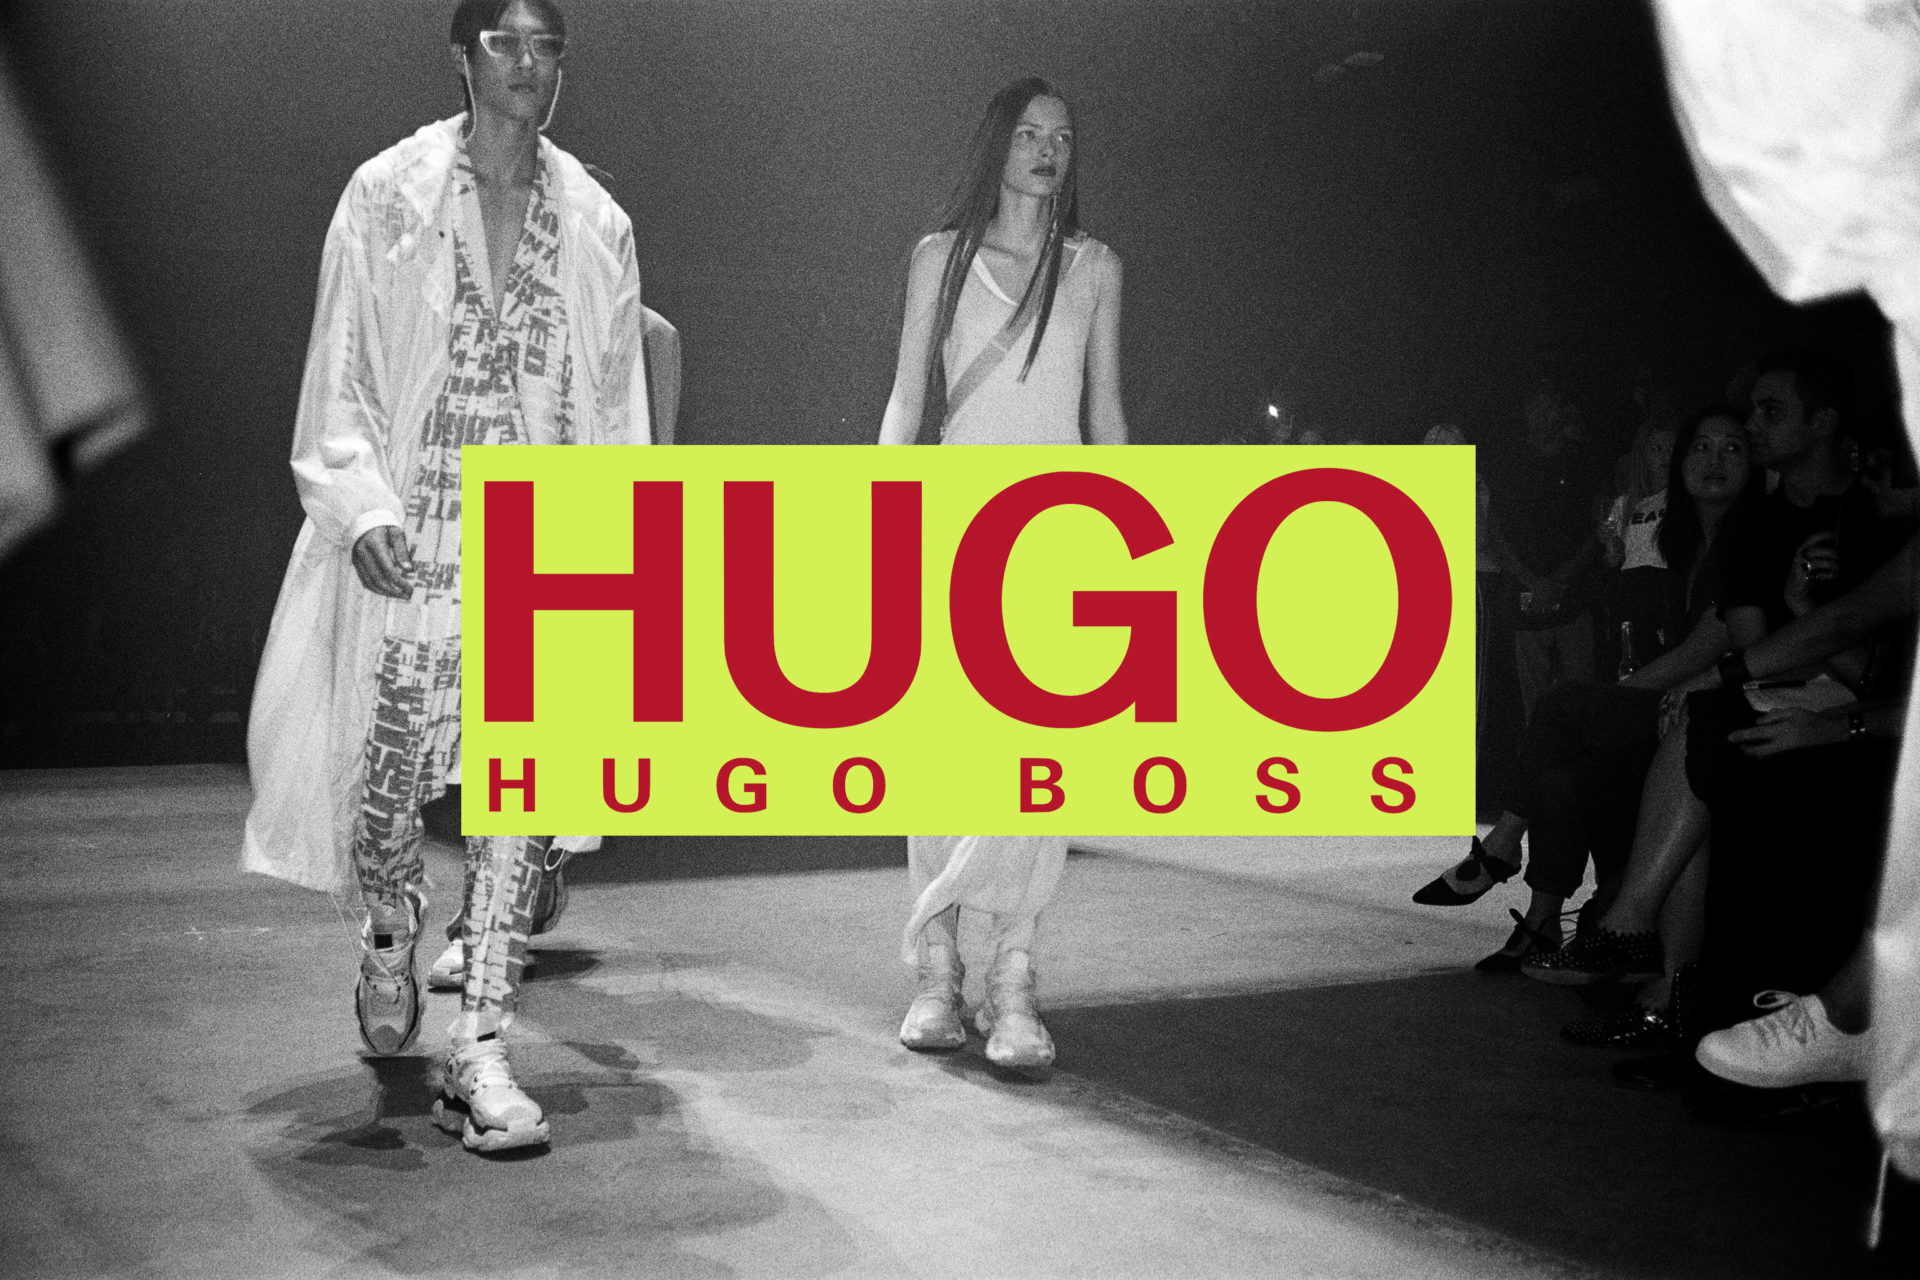 HUGO SS19 Show